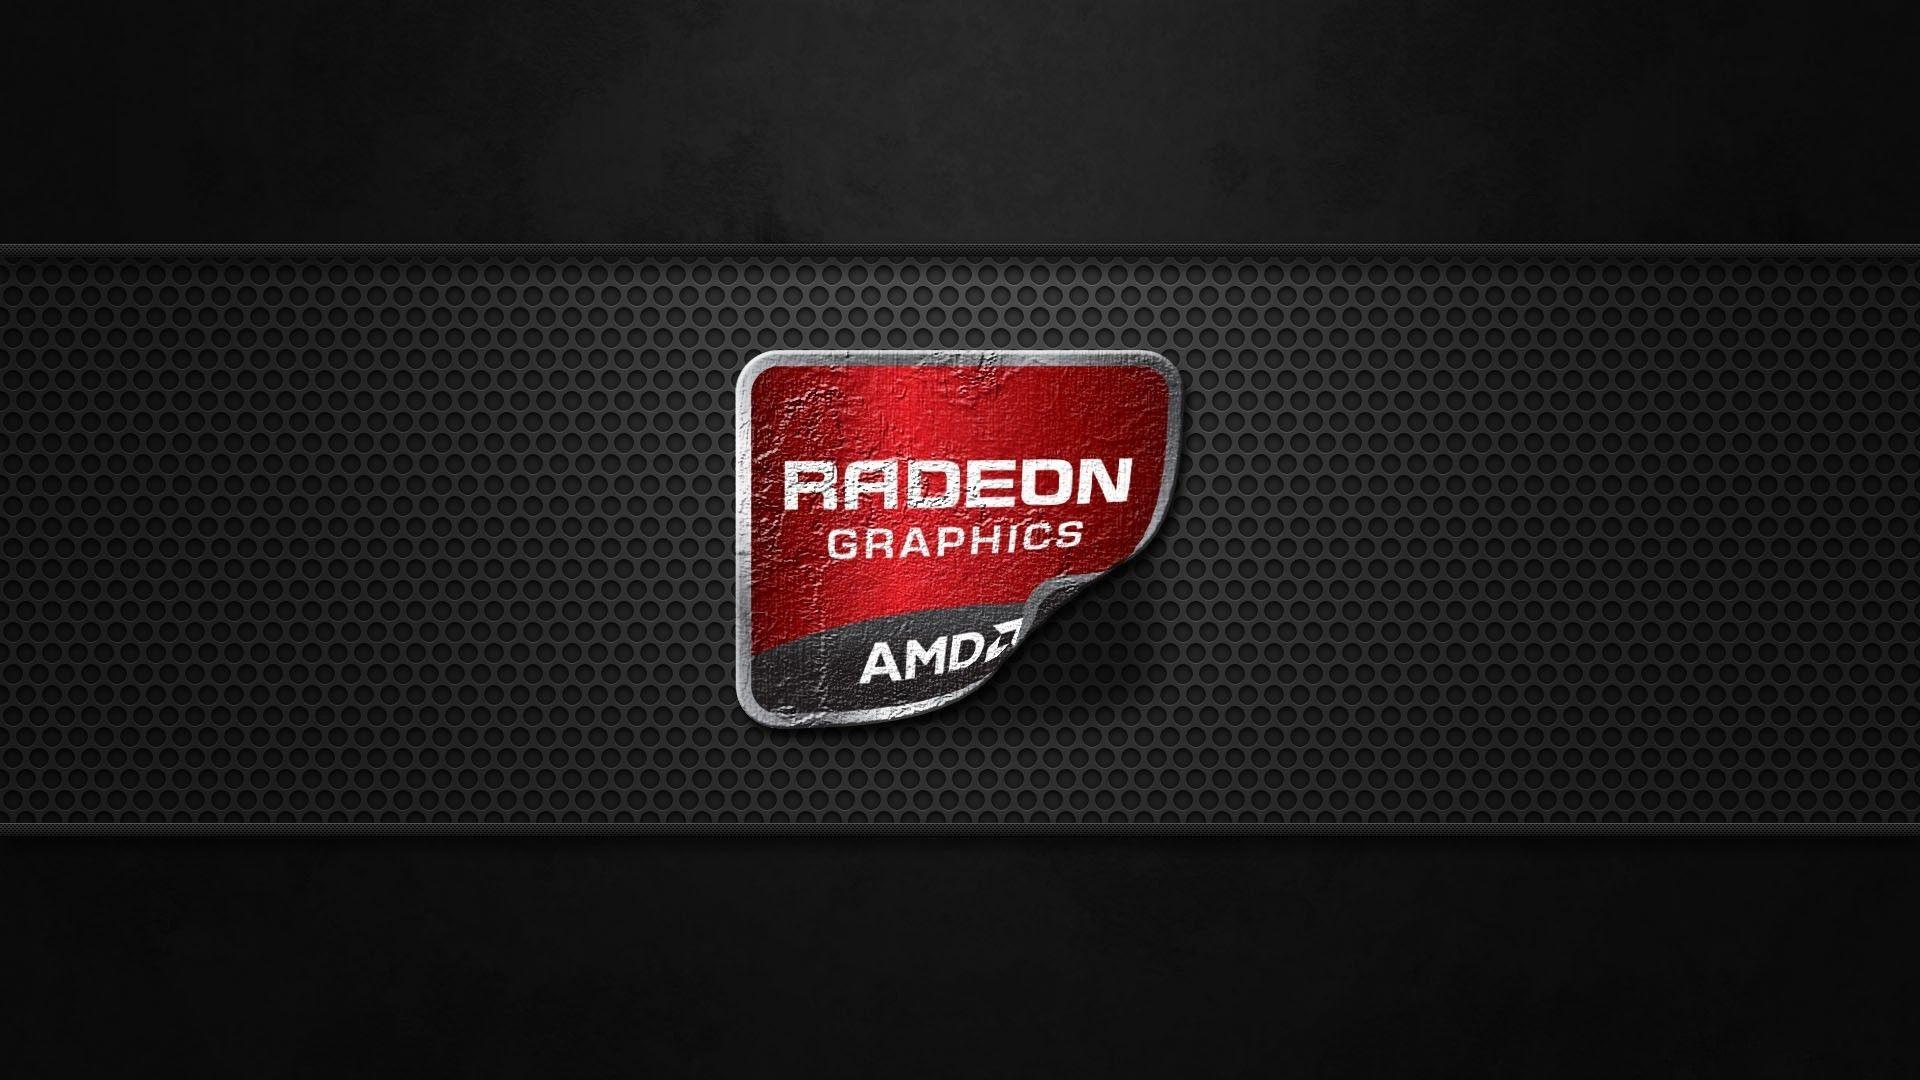 AMD A10 Wallpaper